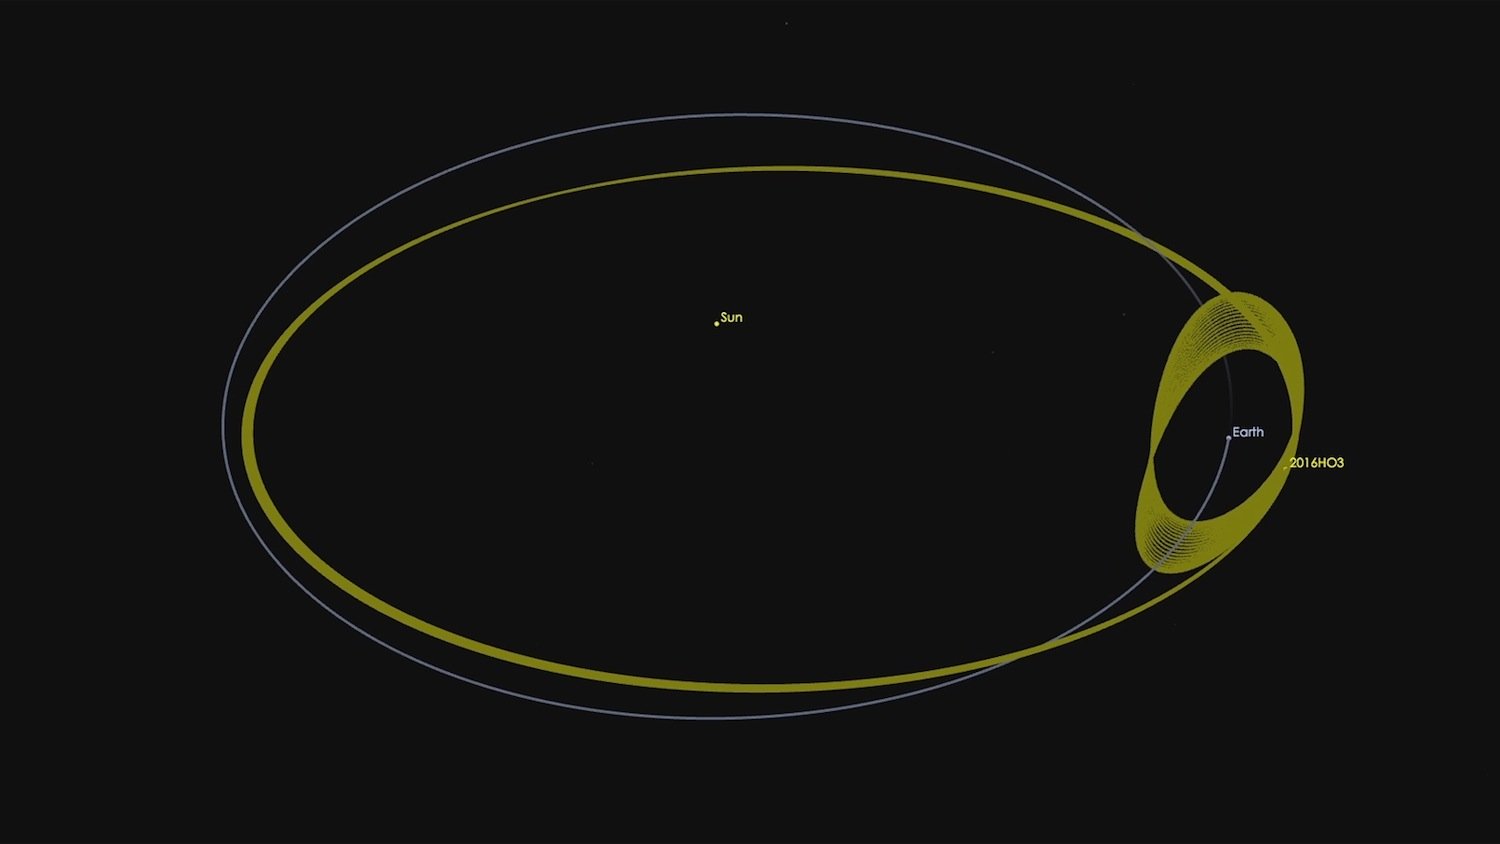 2016 HO3 tanzt seit über 100 Jahren mit der Erde auf ihrer Bahn um die Sonne. Die Größe des Mini-Asteroiden schätzen Forscher auf 40 bis 100 Meter. 